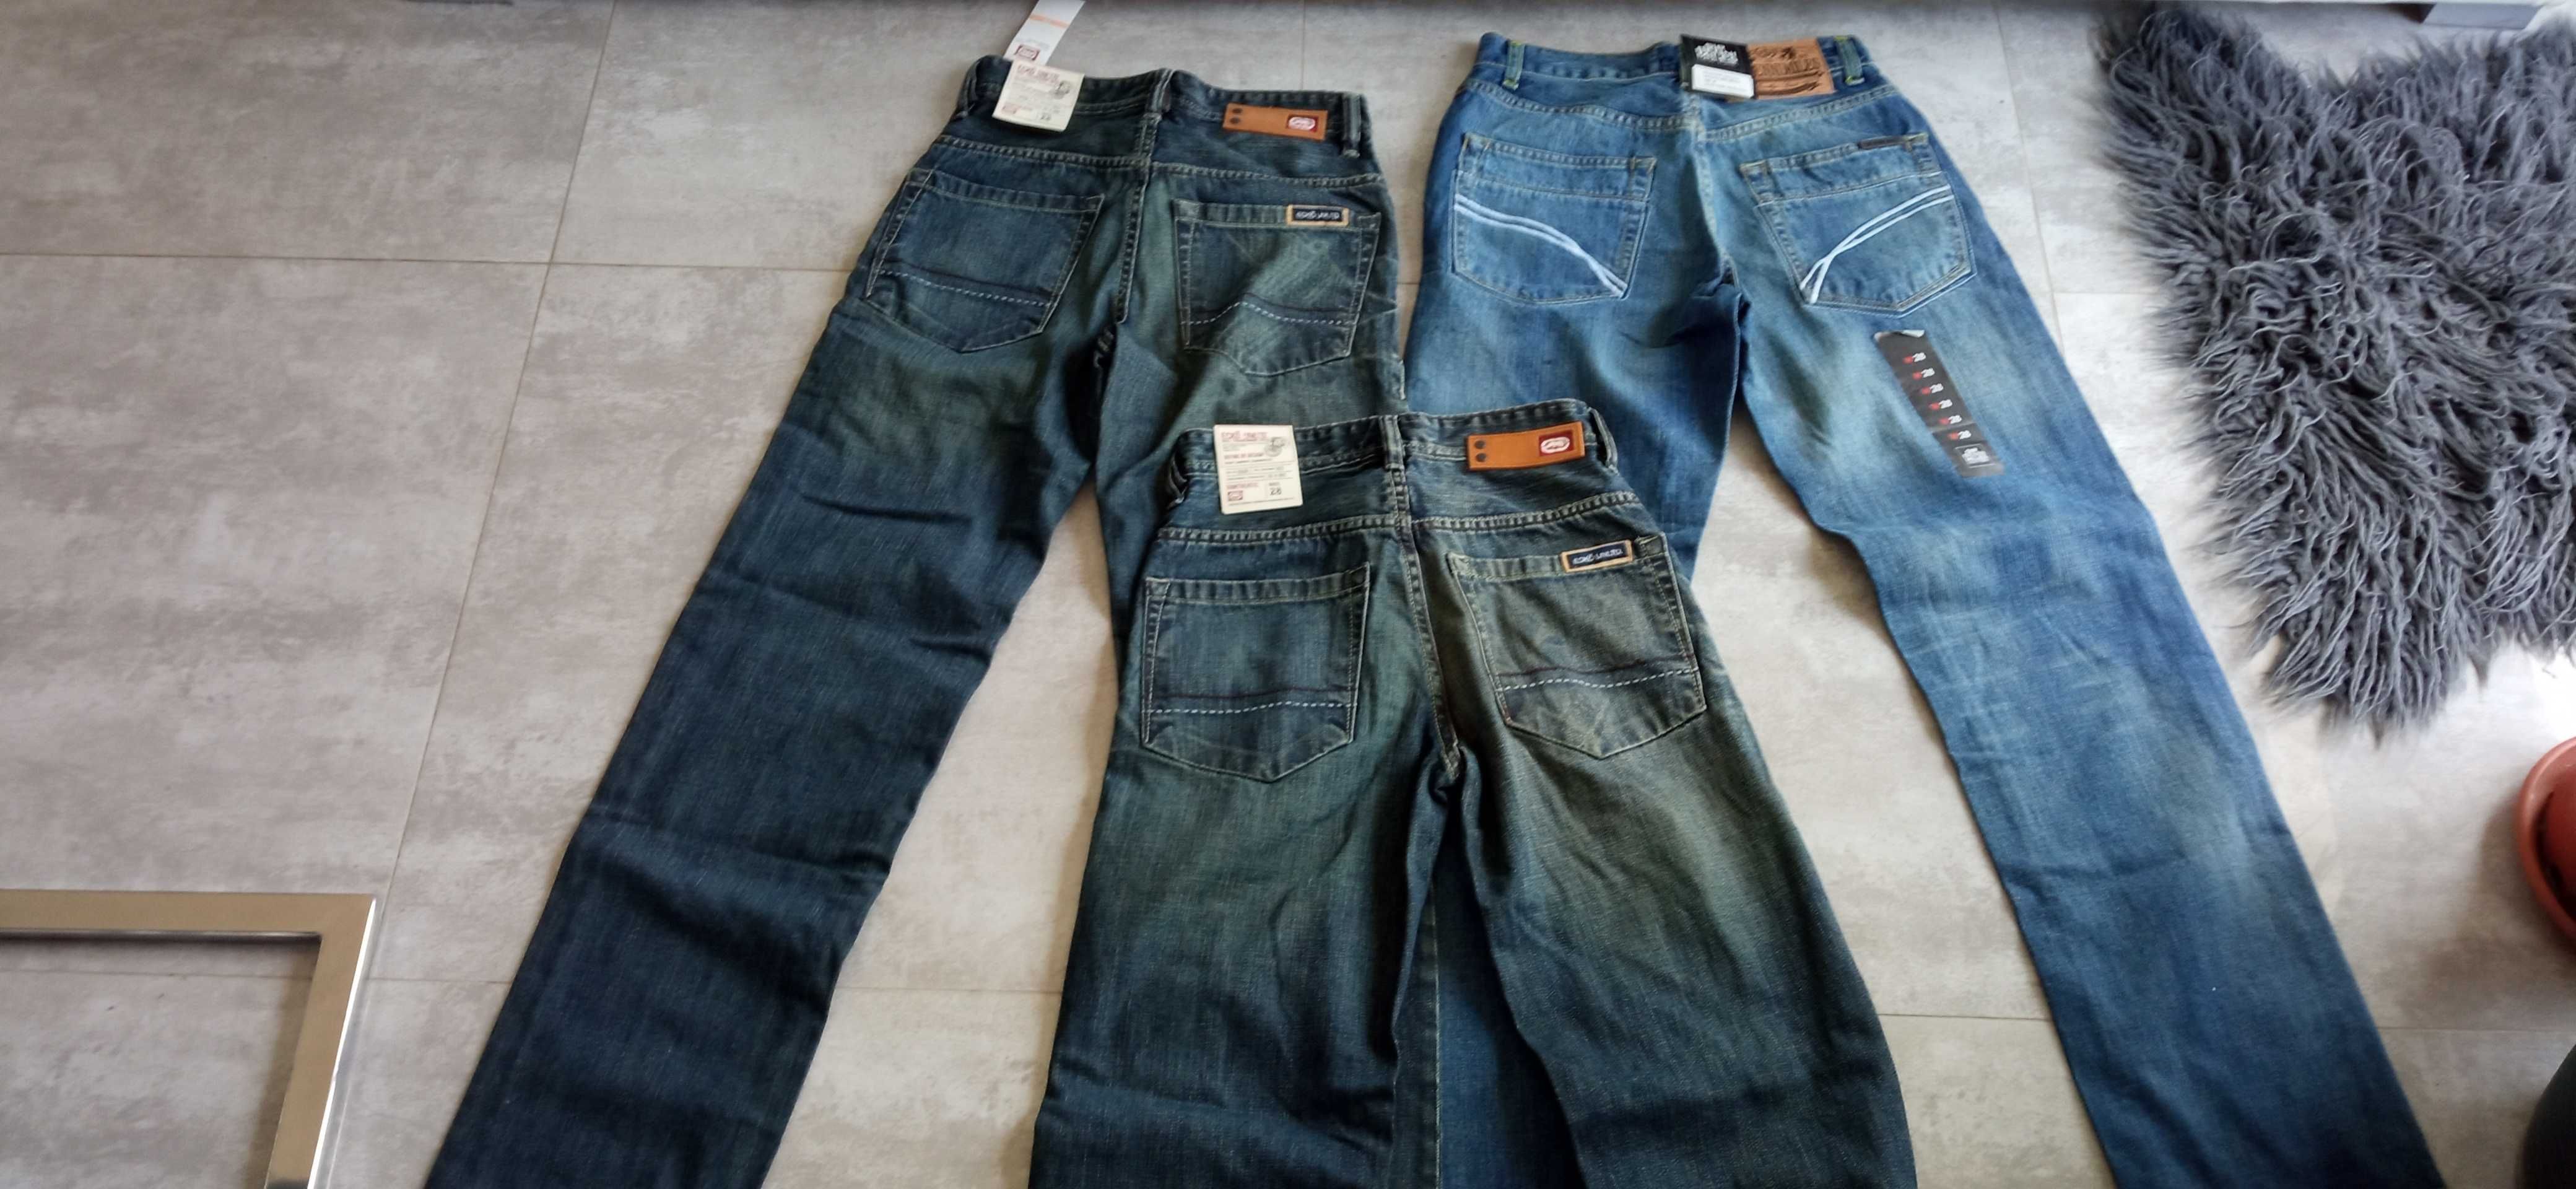 Spodnie jeans nowe dżinsy XS S męskie